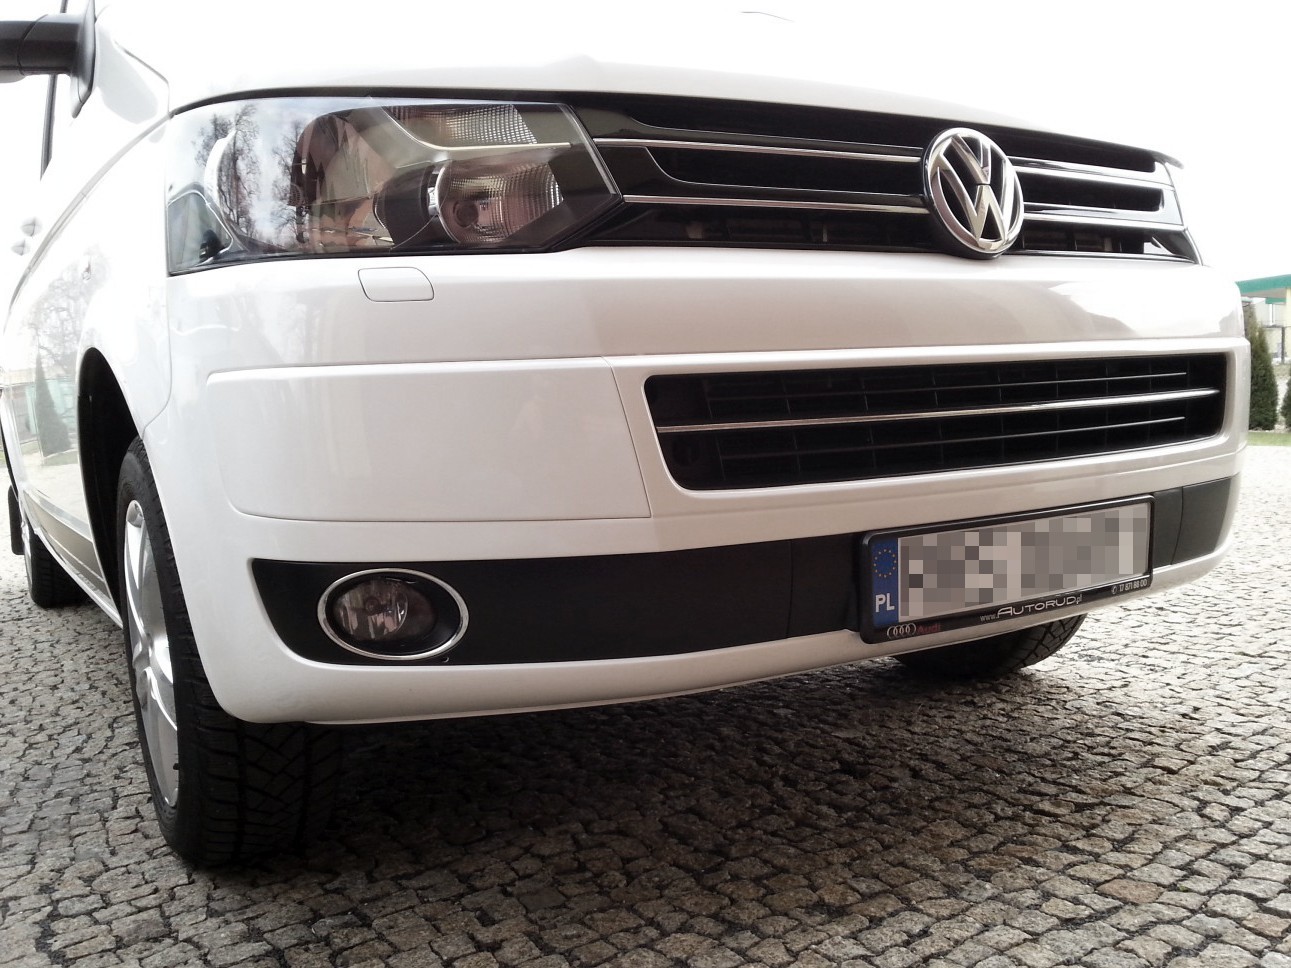 Naklejki tuningowe VW T5 edition 25, osłony halogenów - dodatkowe elementy